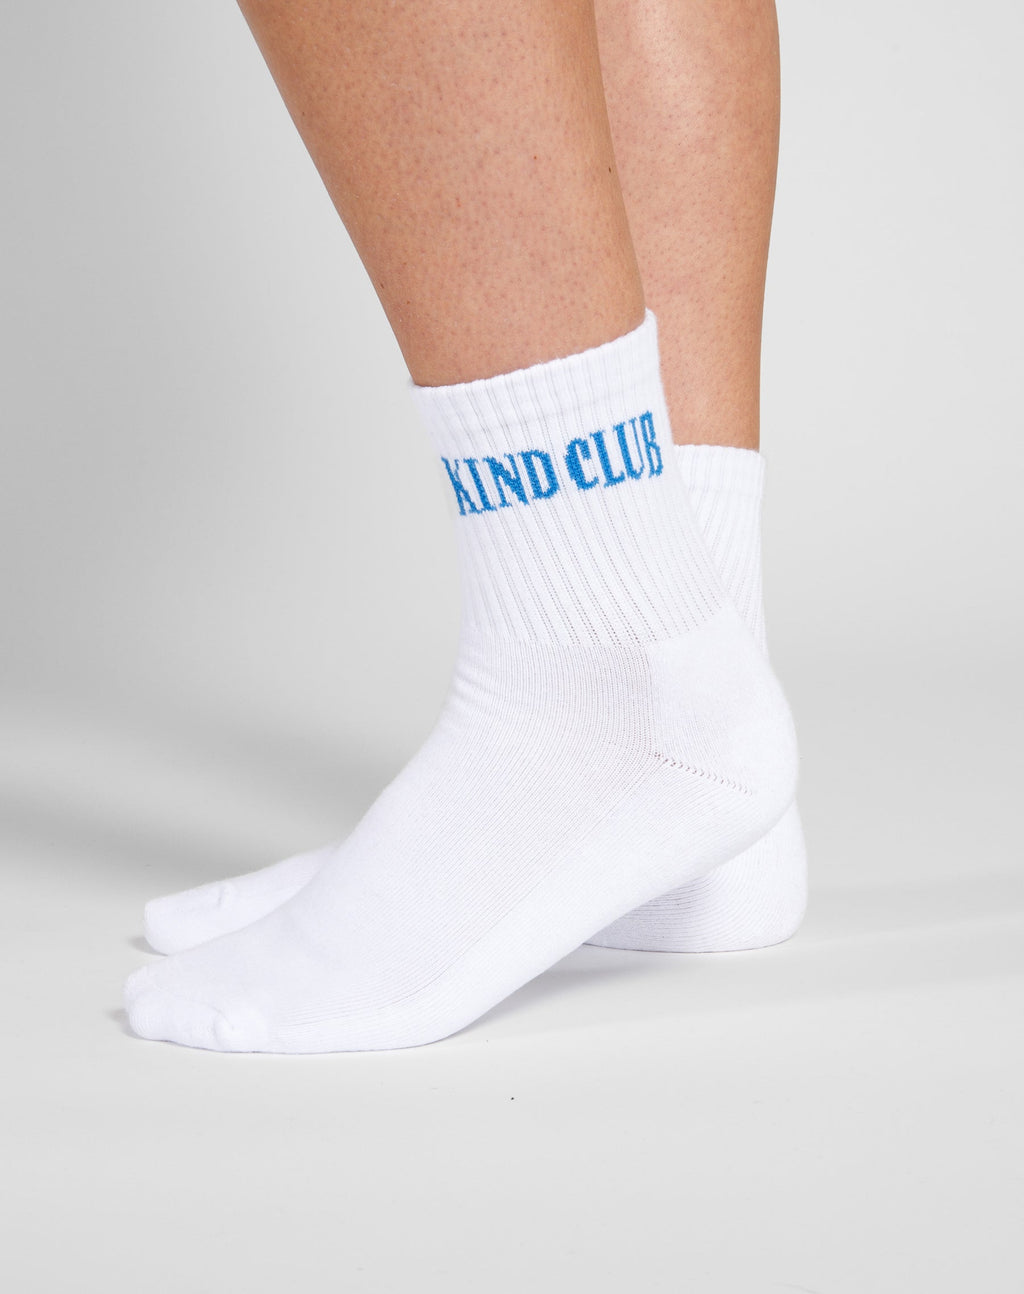 Kind Club Sock